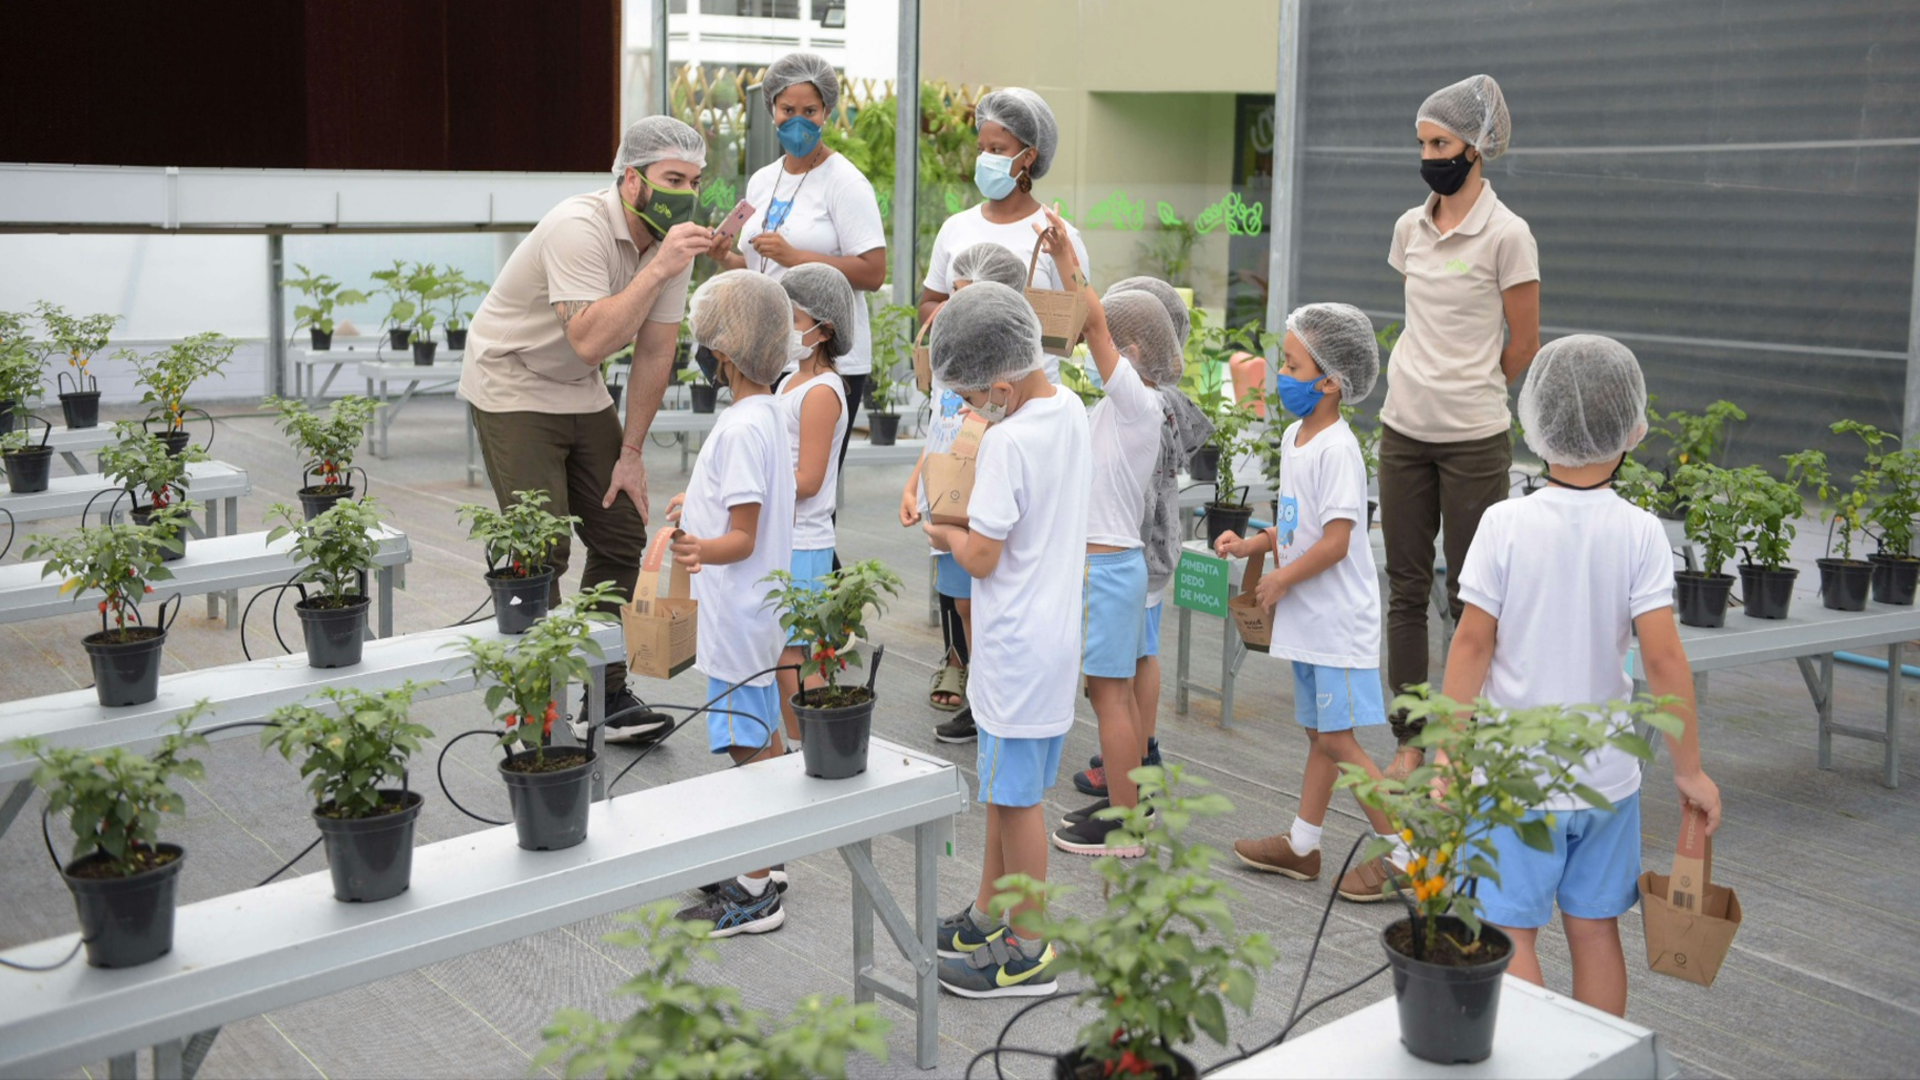 A fazenda urbana BeGreen tem como objetivo educar de forma lúdica sobre hábitos saudáveis e sustentabilidade, além de estimular a criatividade das crianças.